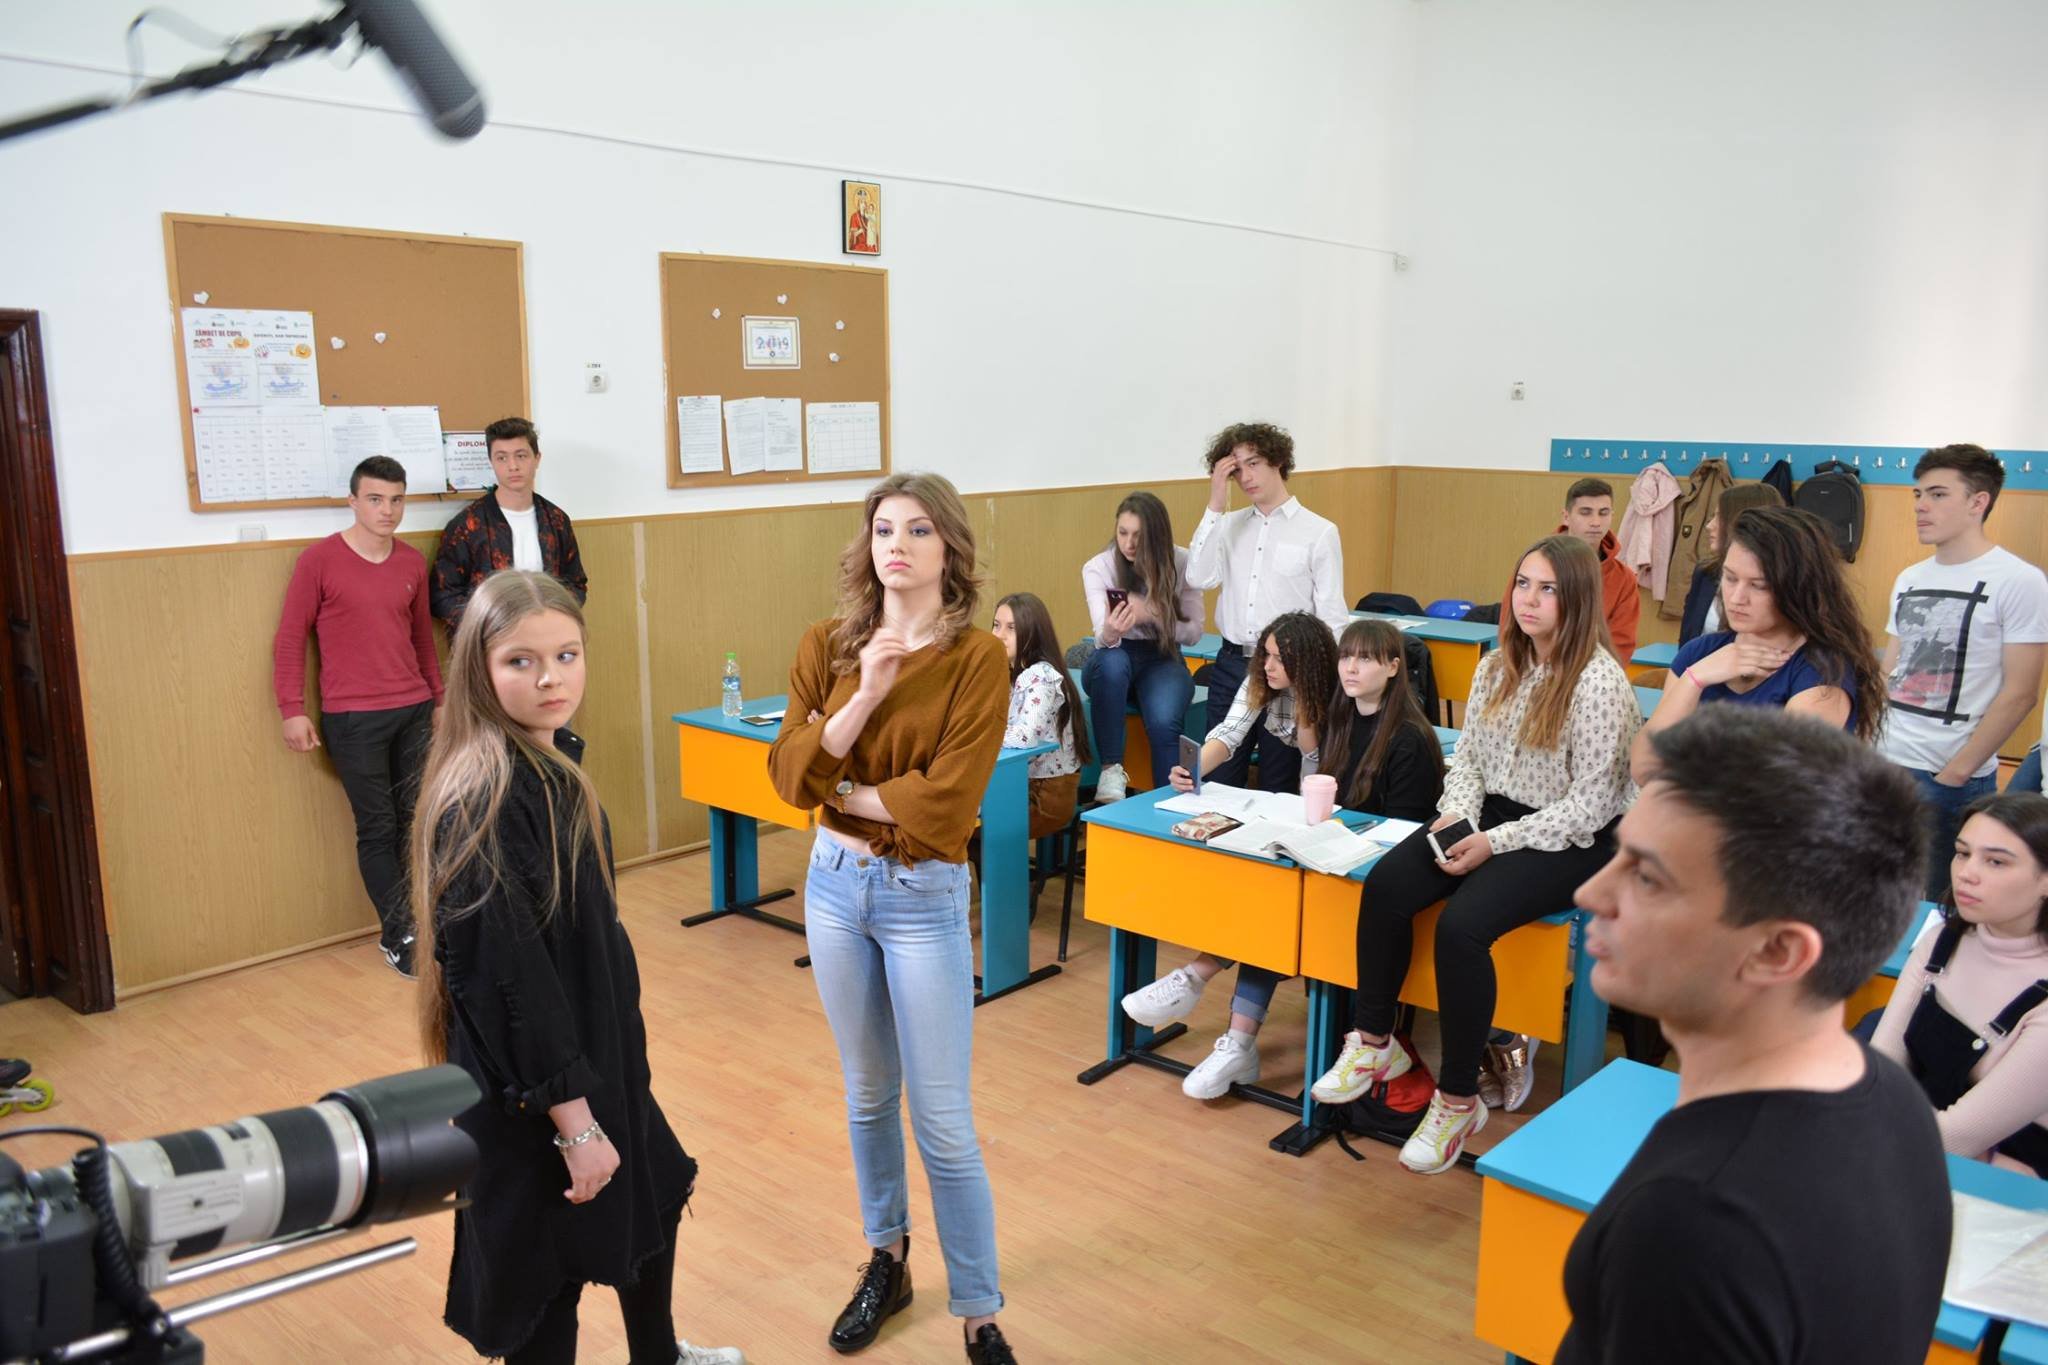  S-au terminat filmările pentru campania anti-bullying în şcoli